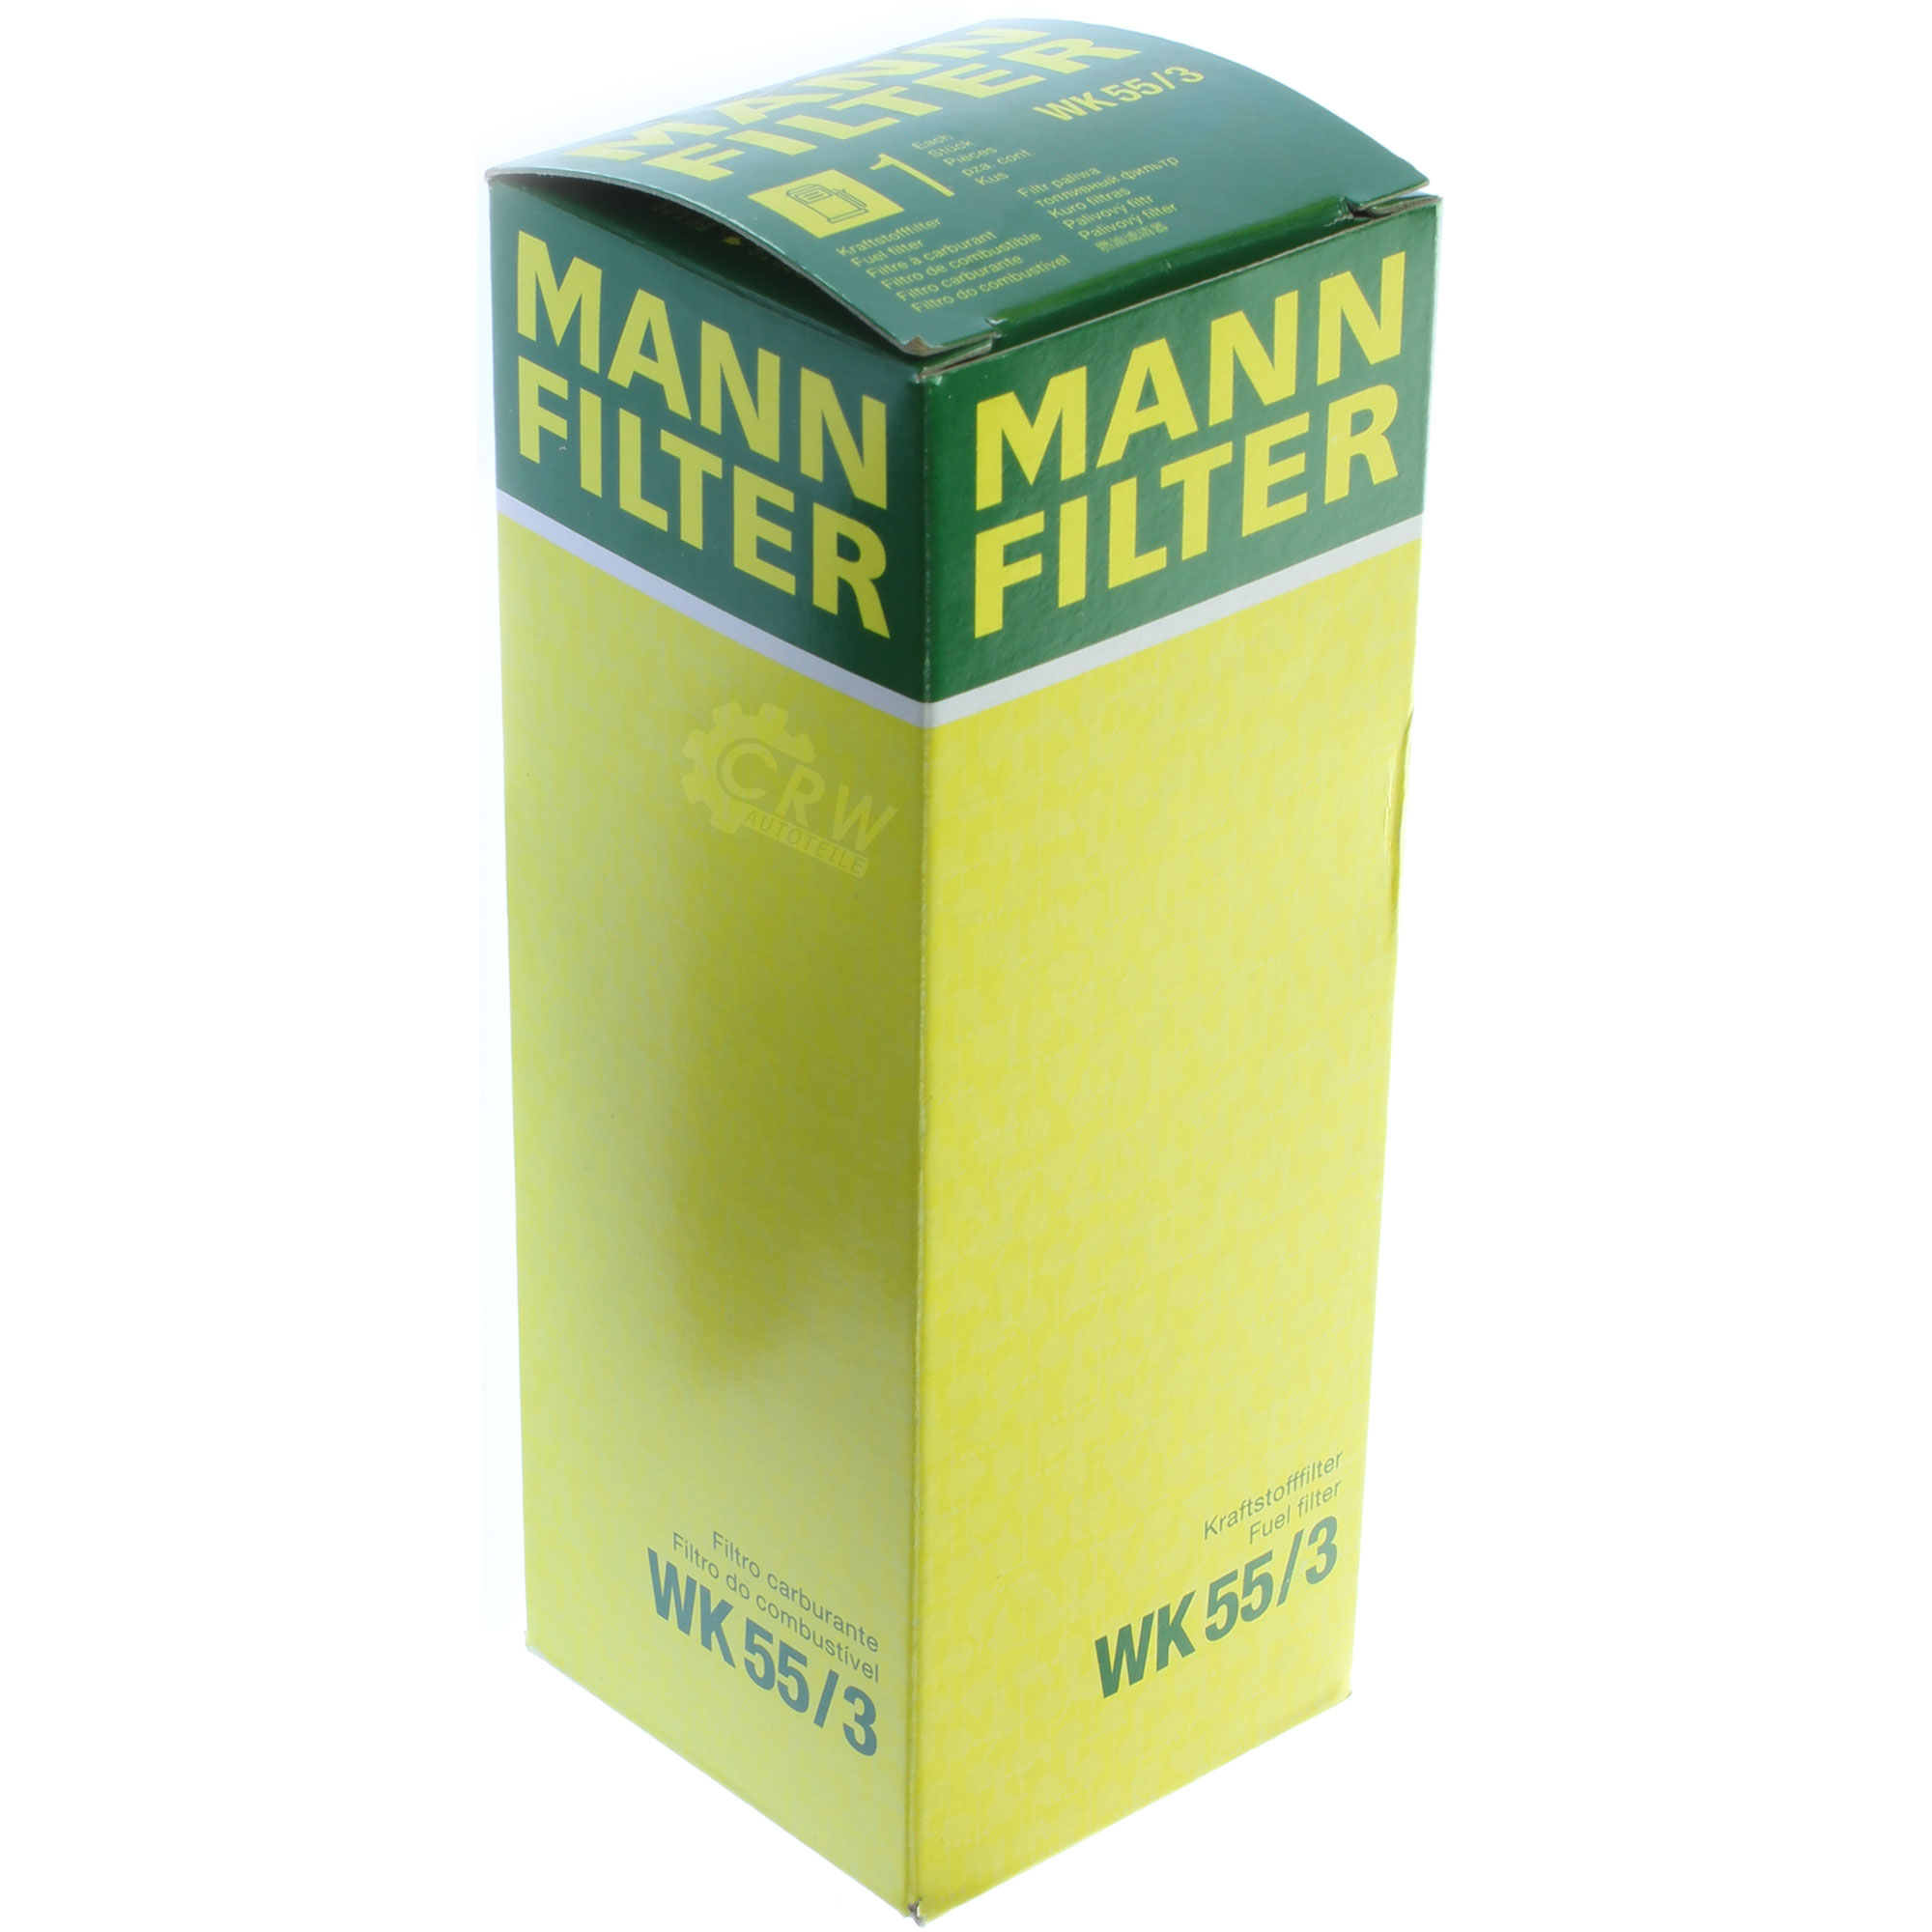 MANN-FILTER Kraftstofffilter WK 55/3 Fuel Filter